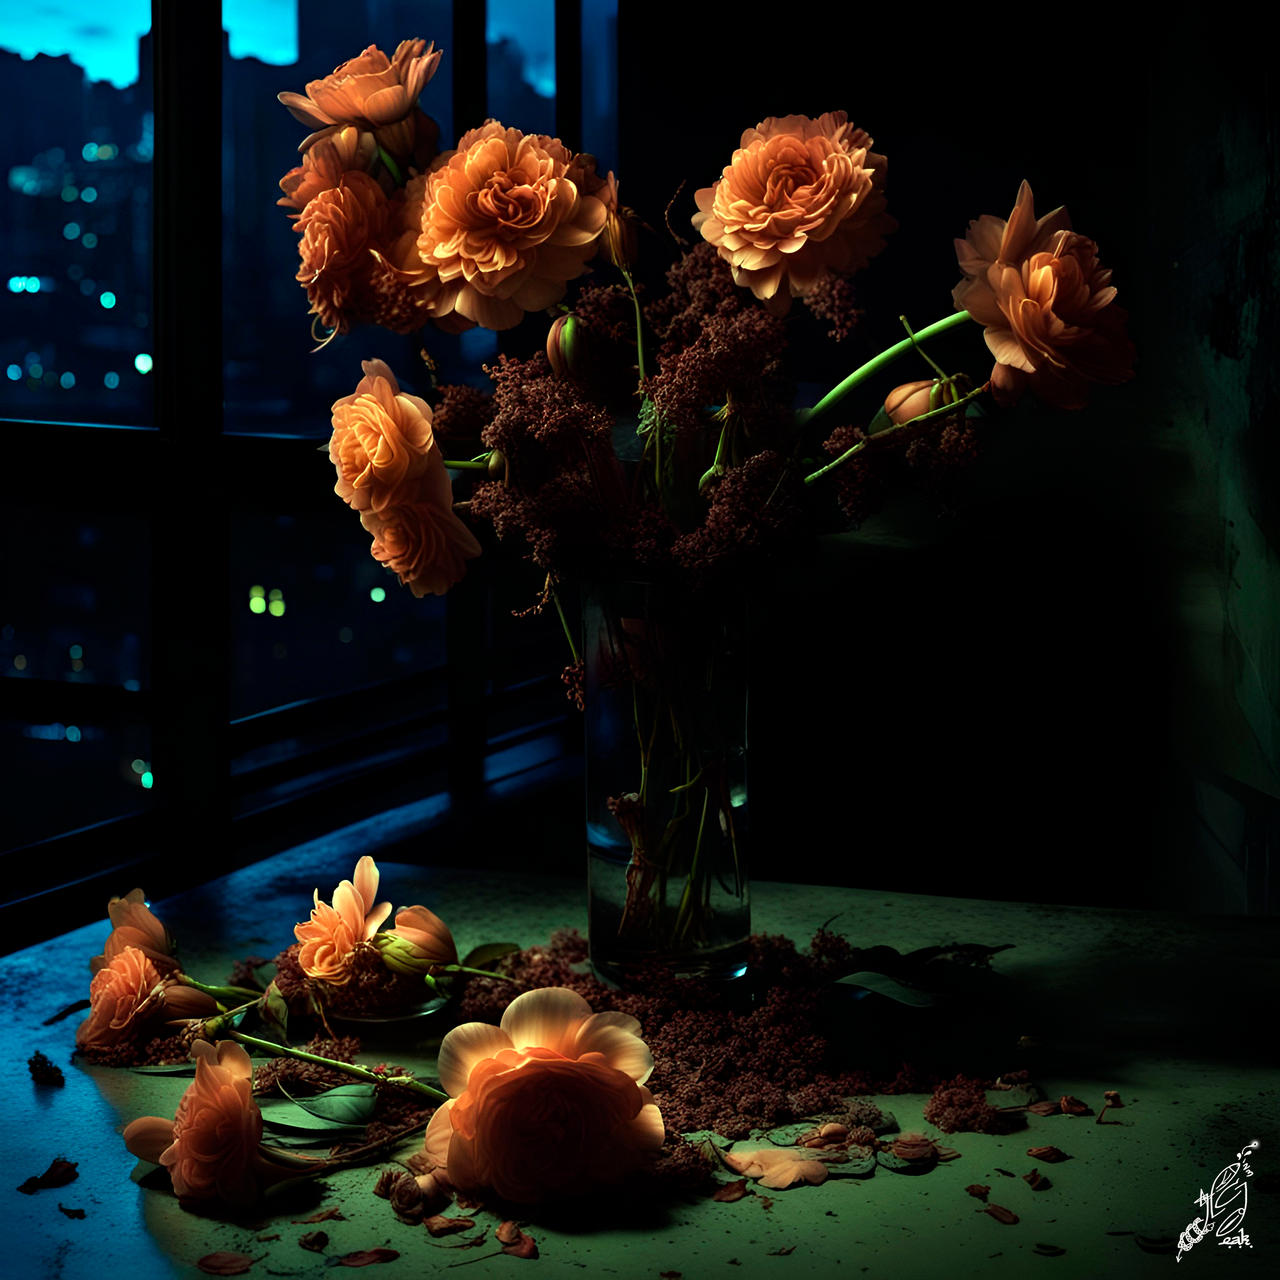 Les fleurs du mal by ElAbueloKraken on DeviantArt